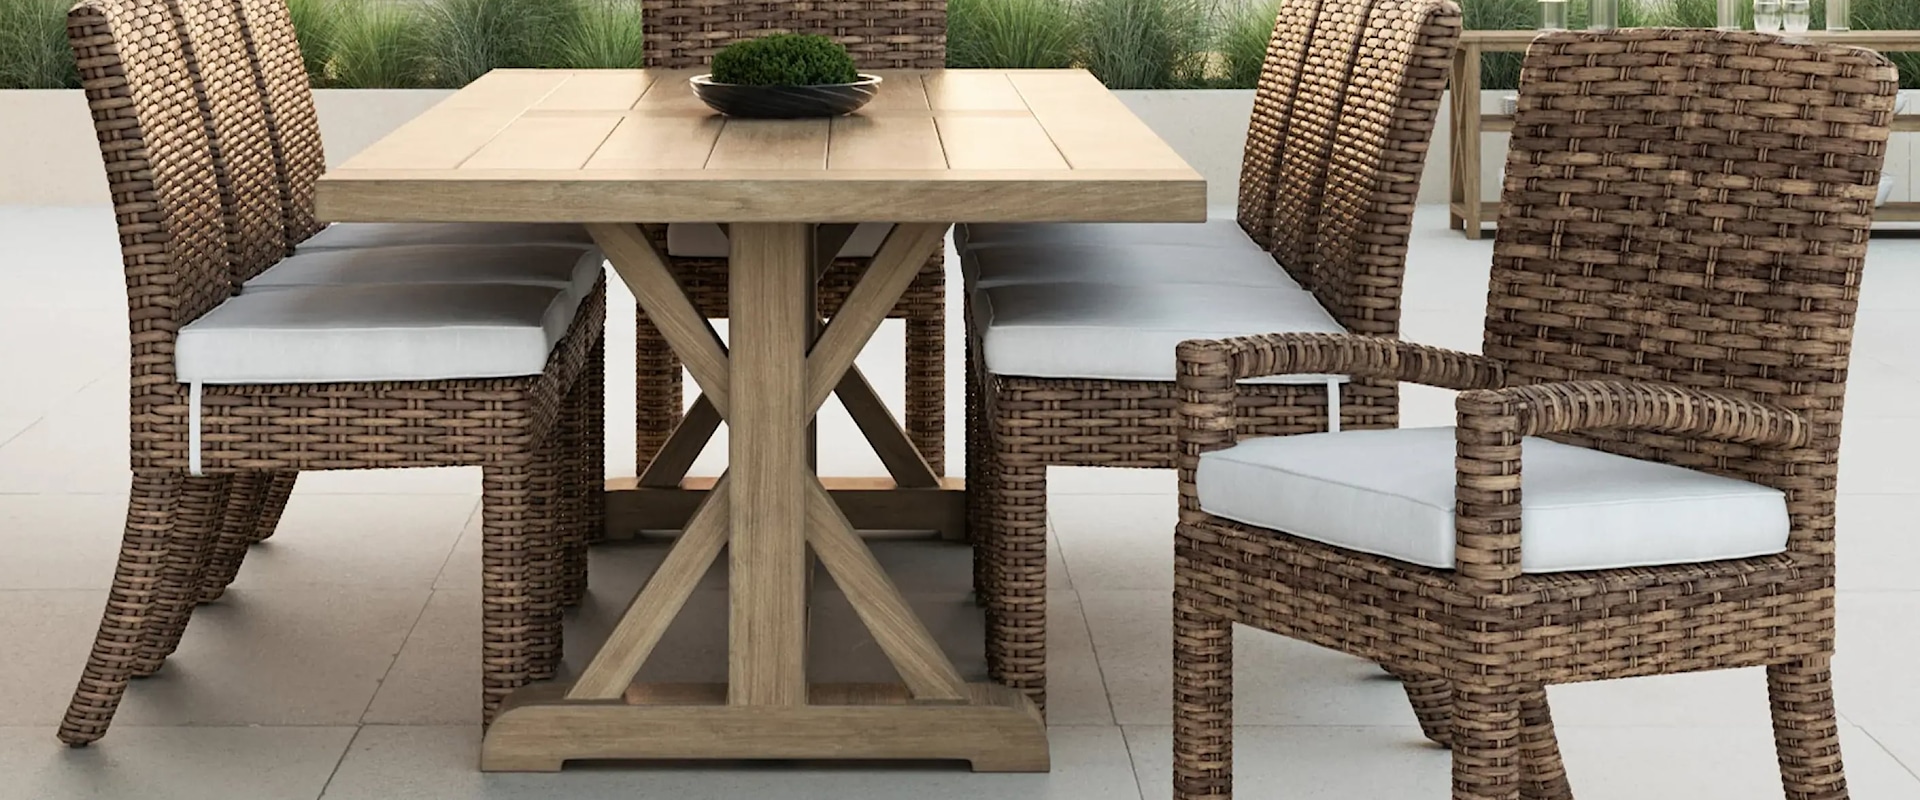 9 Piece Outdoor Dining Set with a Rectangular Outdoor Dining Table and 8 Outdoor Dining Chairs